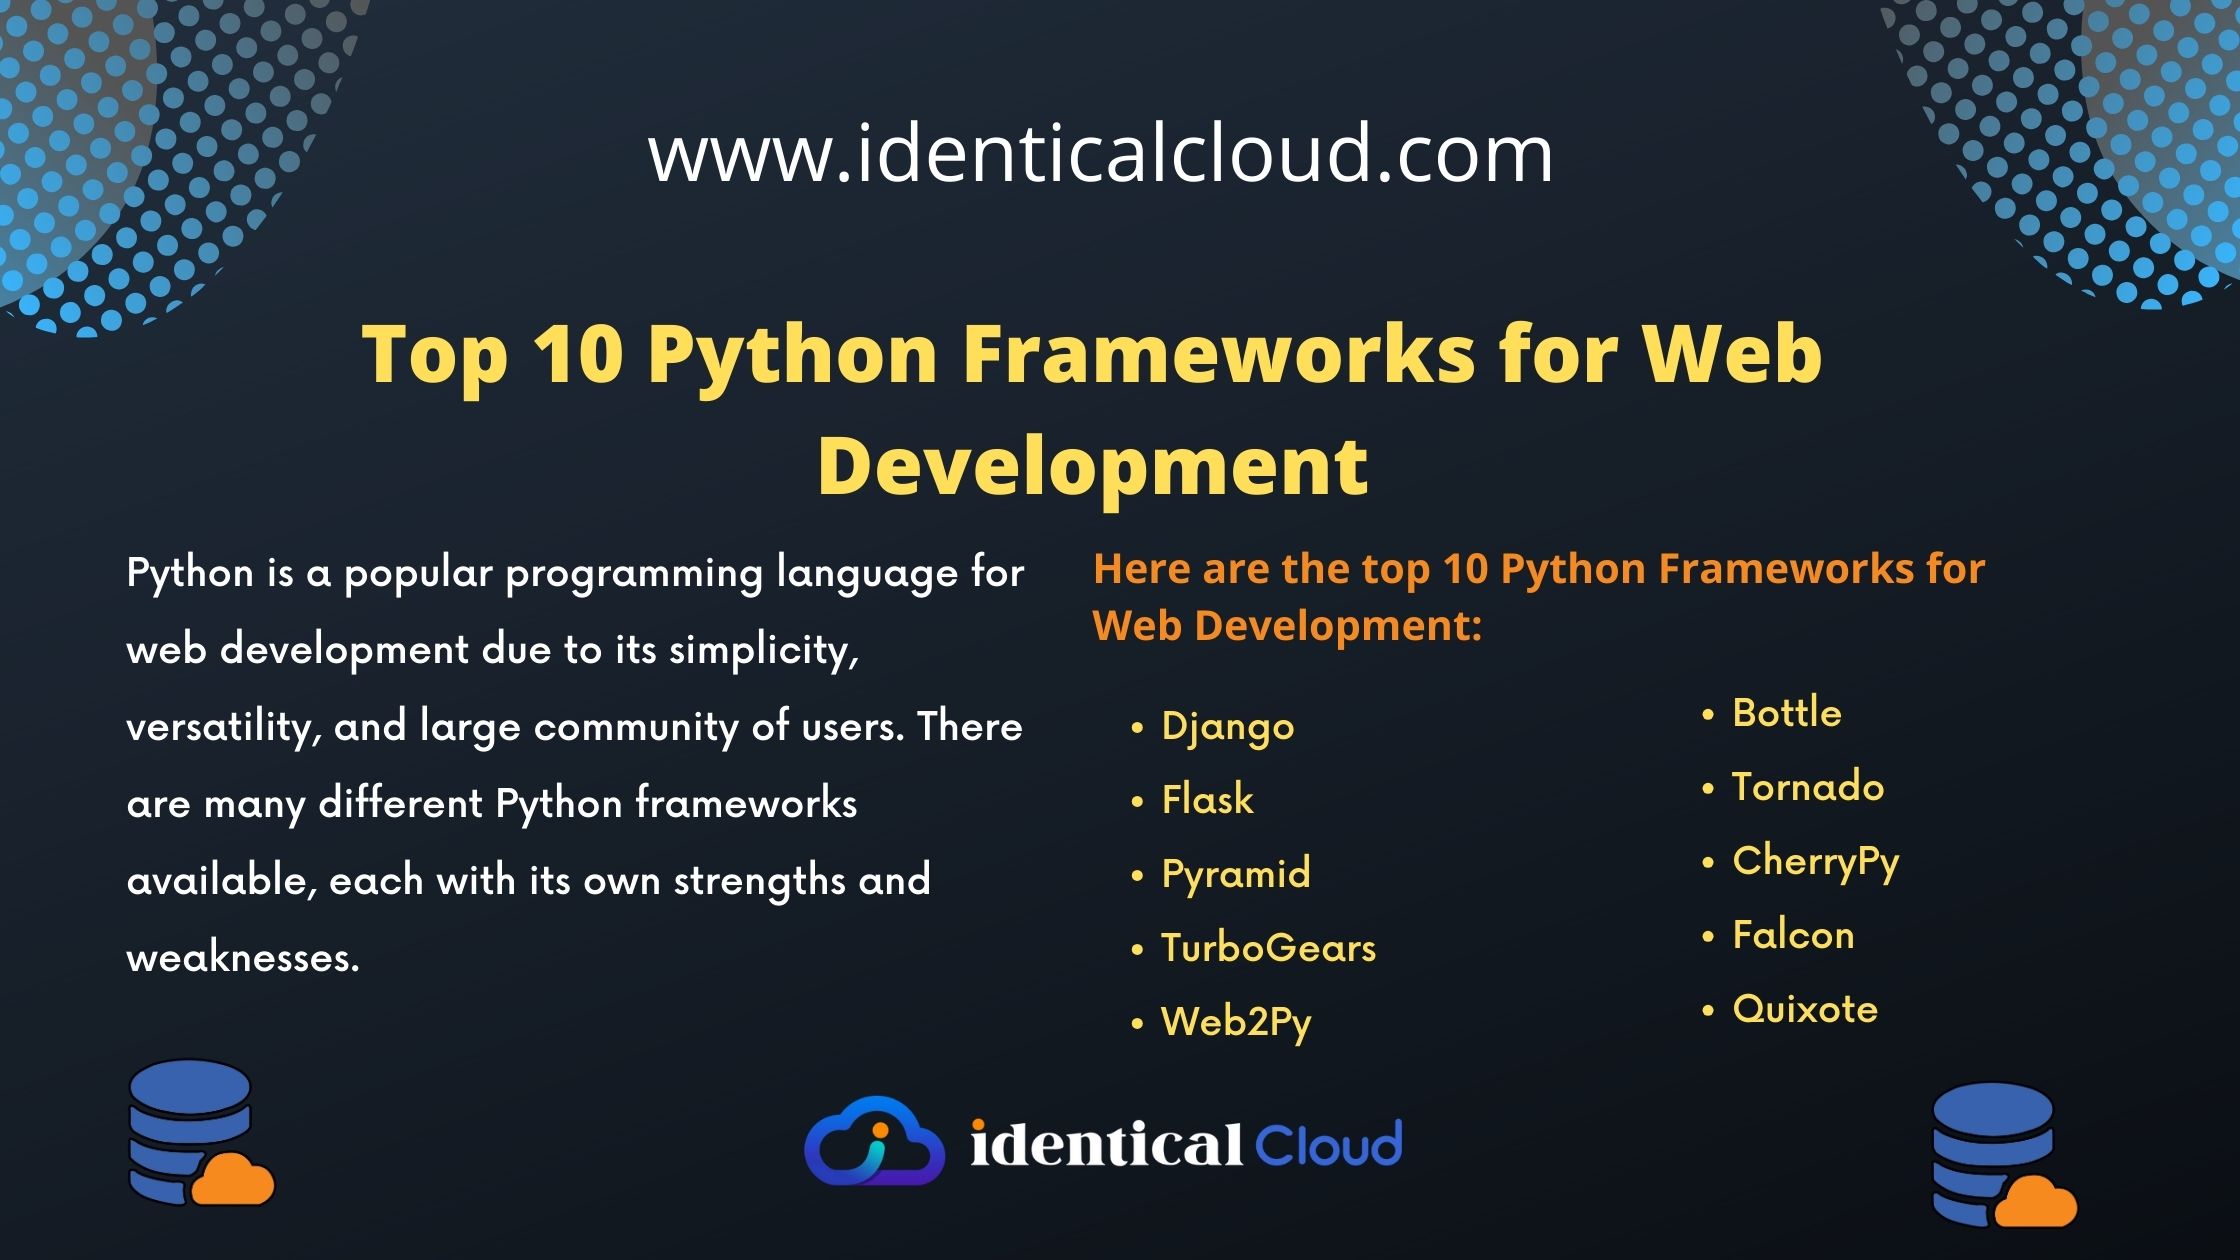 Top 10 Python Frameworks for Web Development - identicalcloud.com